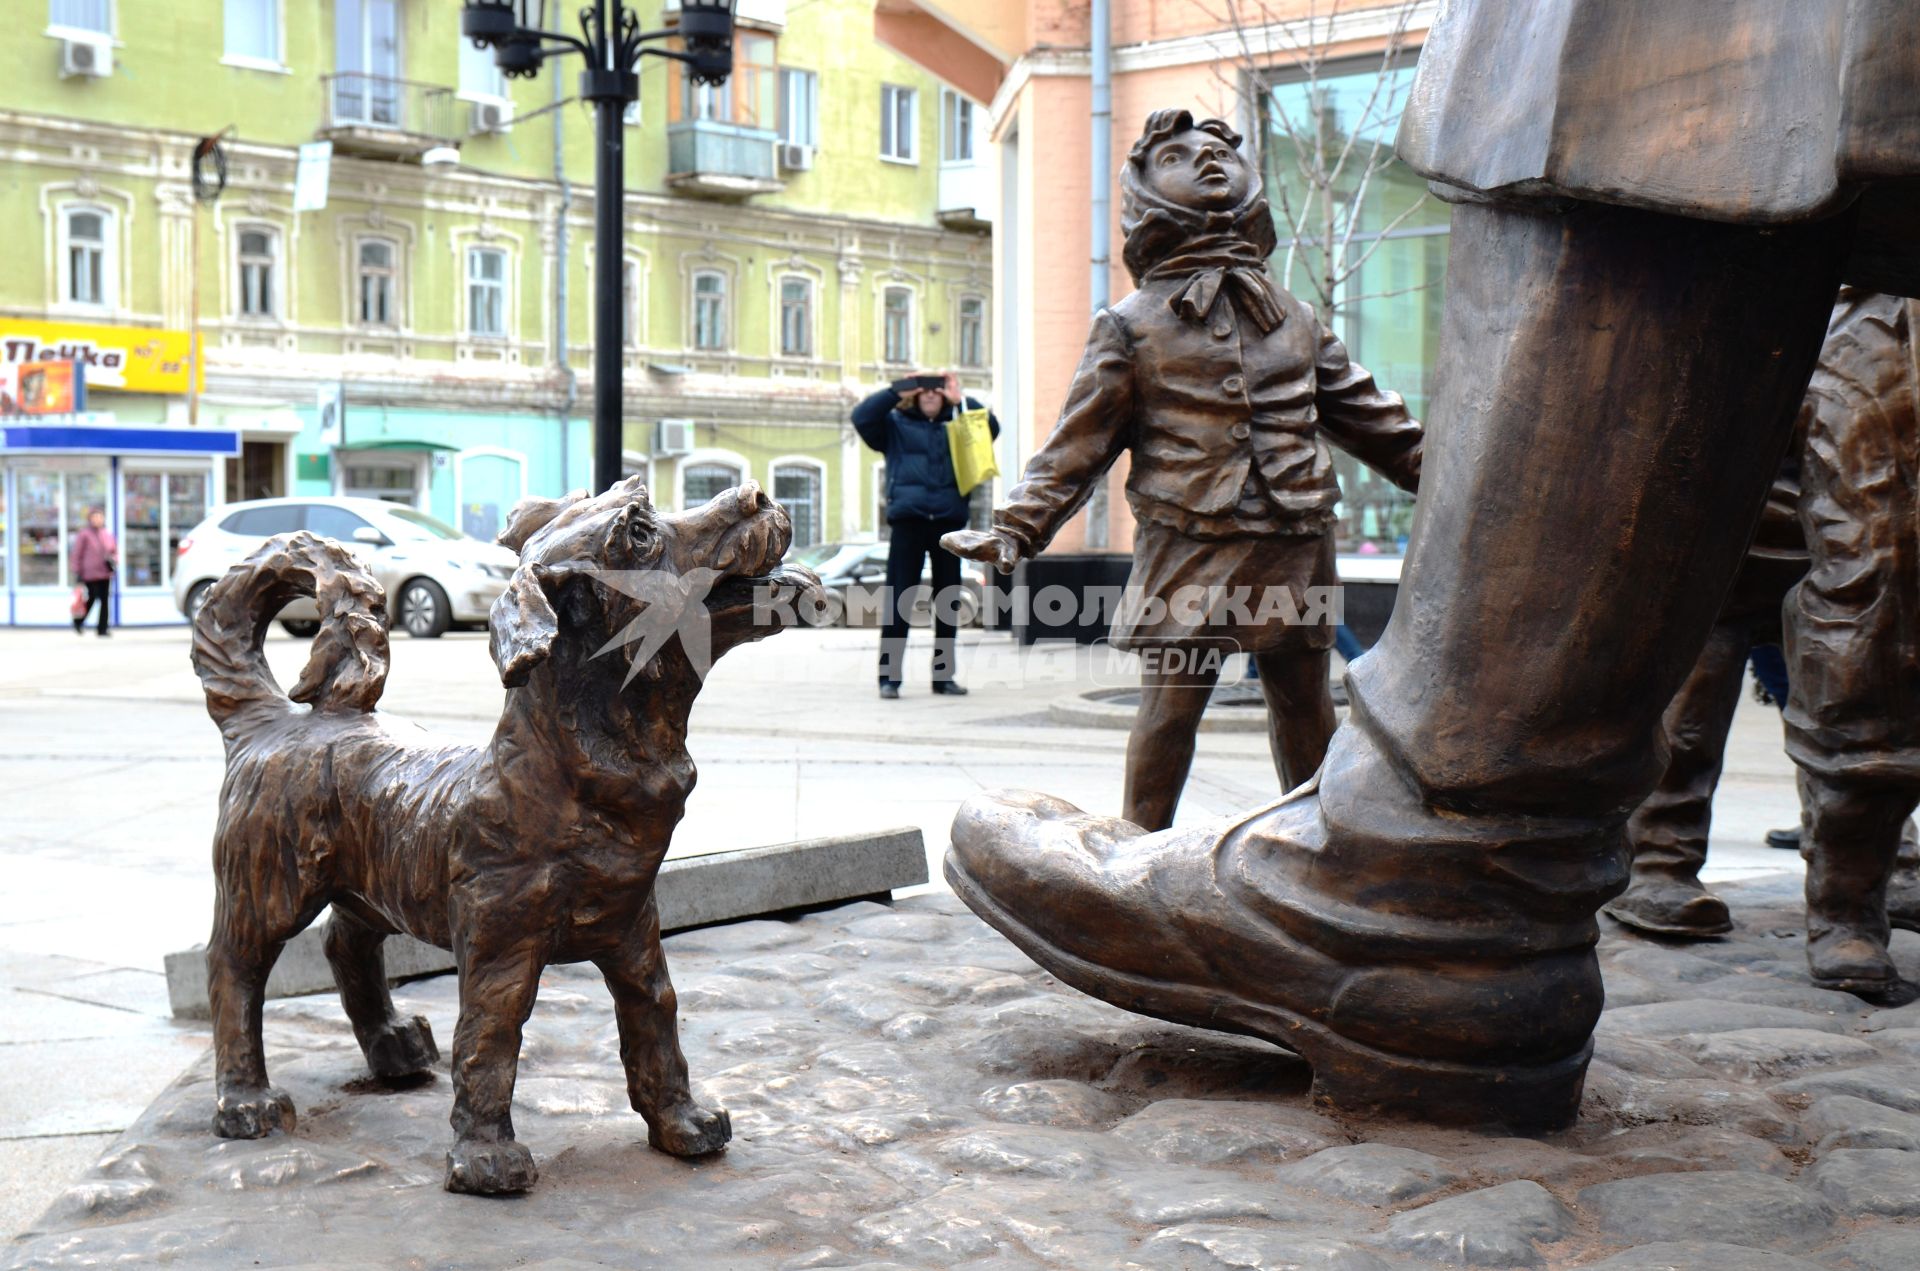 Самара. Памятник в честь литературного героя Дяди Степы установлен на Ленинградской улице.